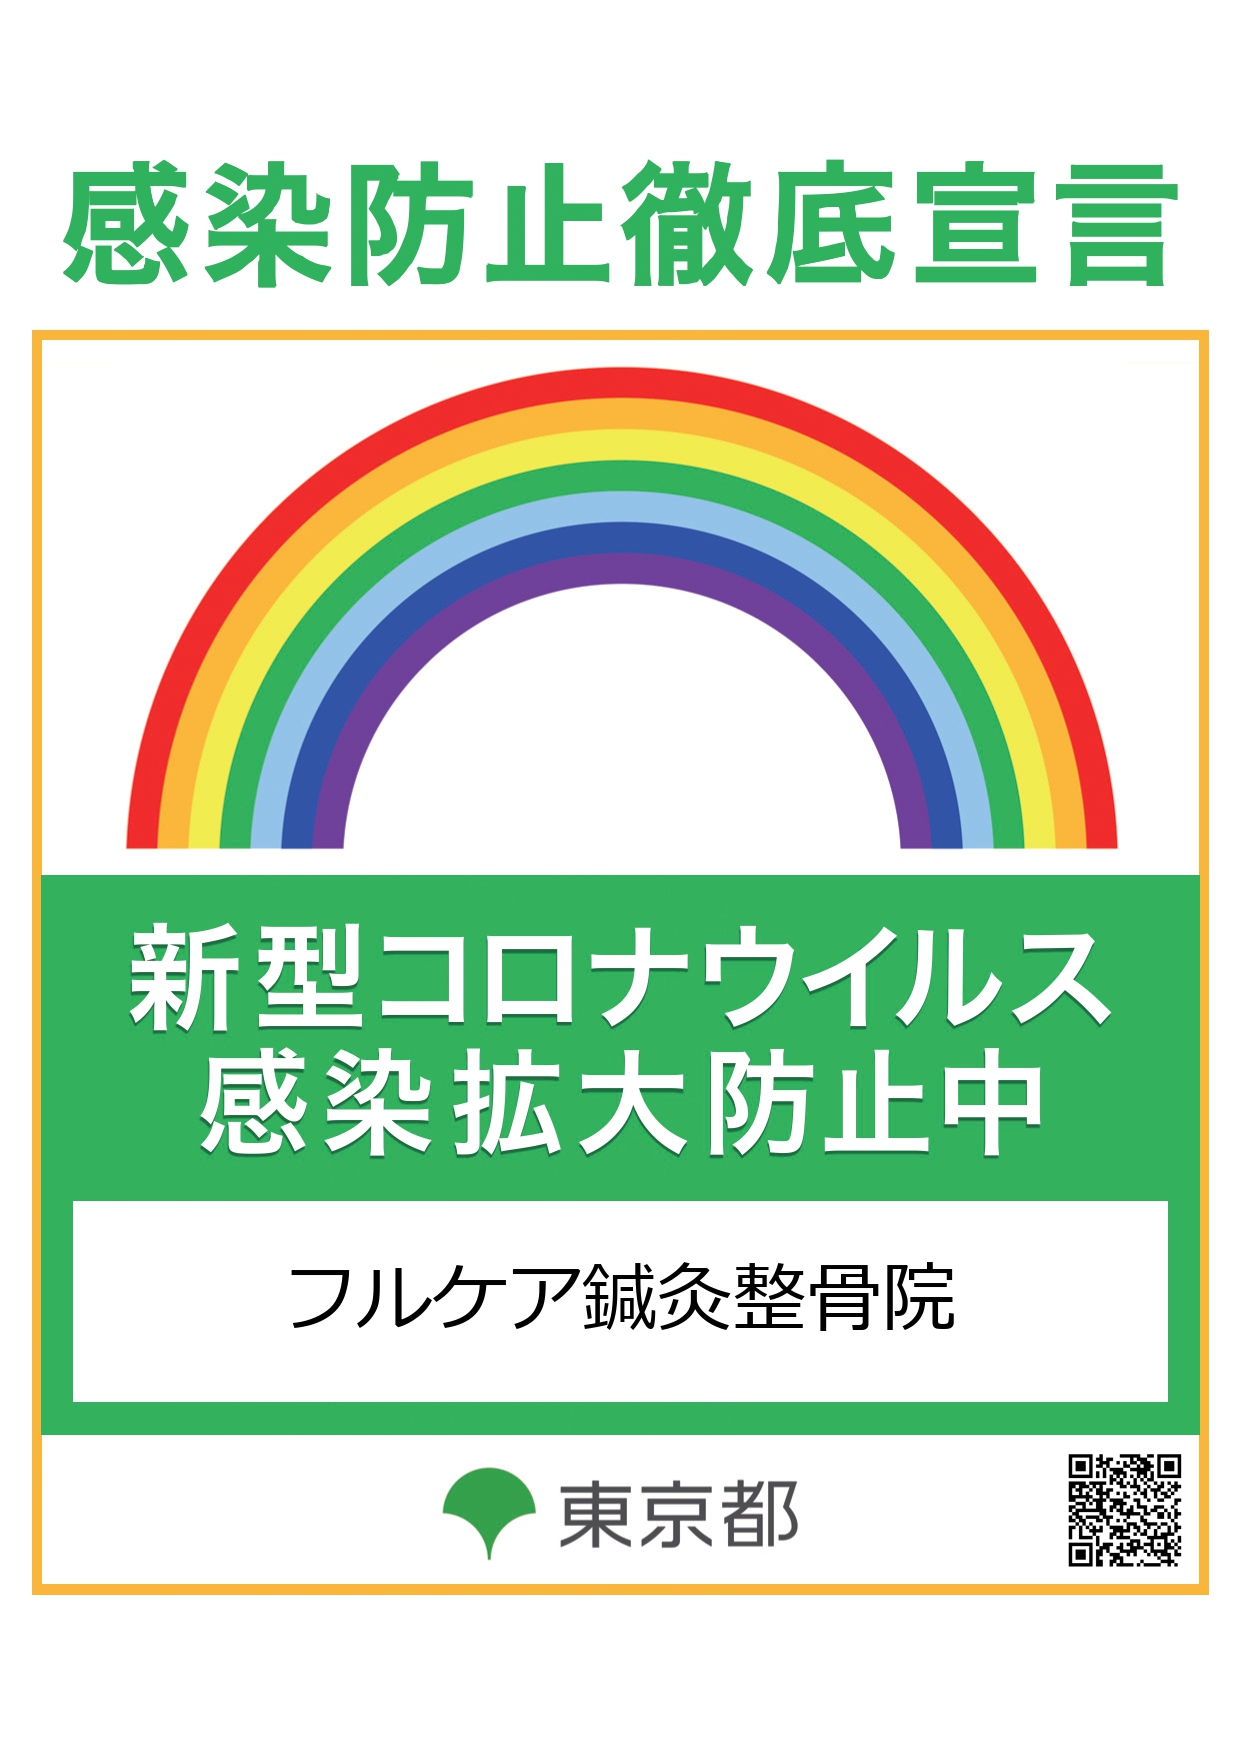 東京都推奨による新型コロナウイルス感染防止徹底宣言を当院では行っています。